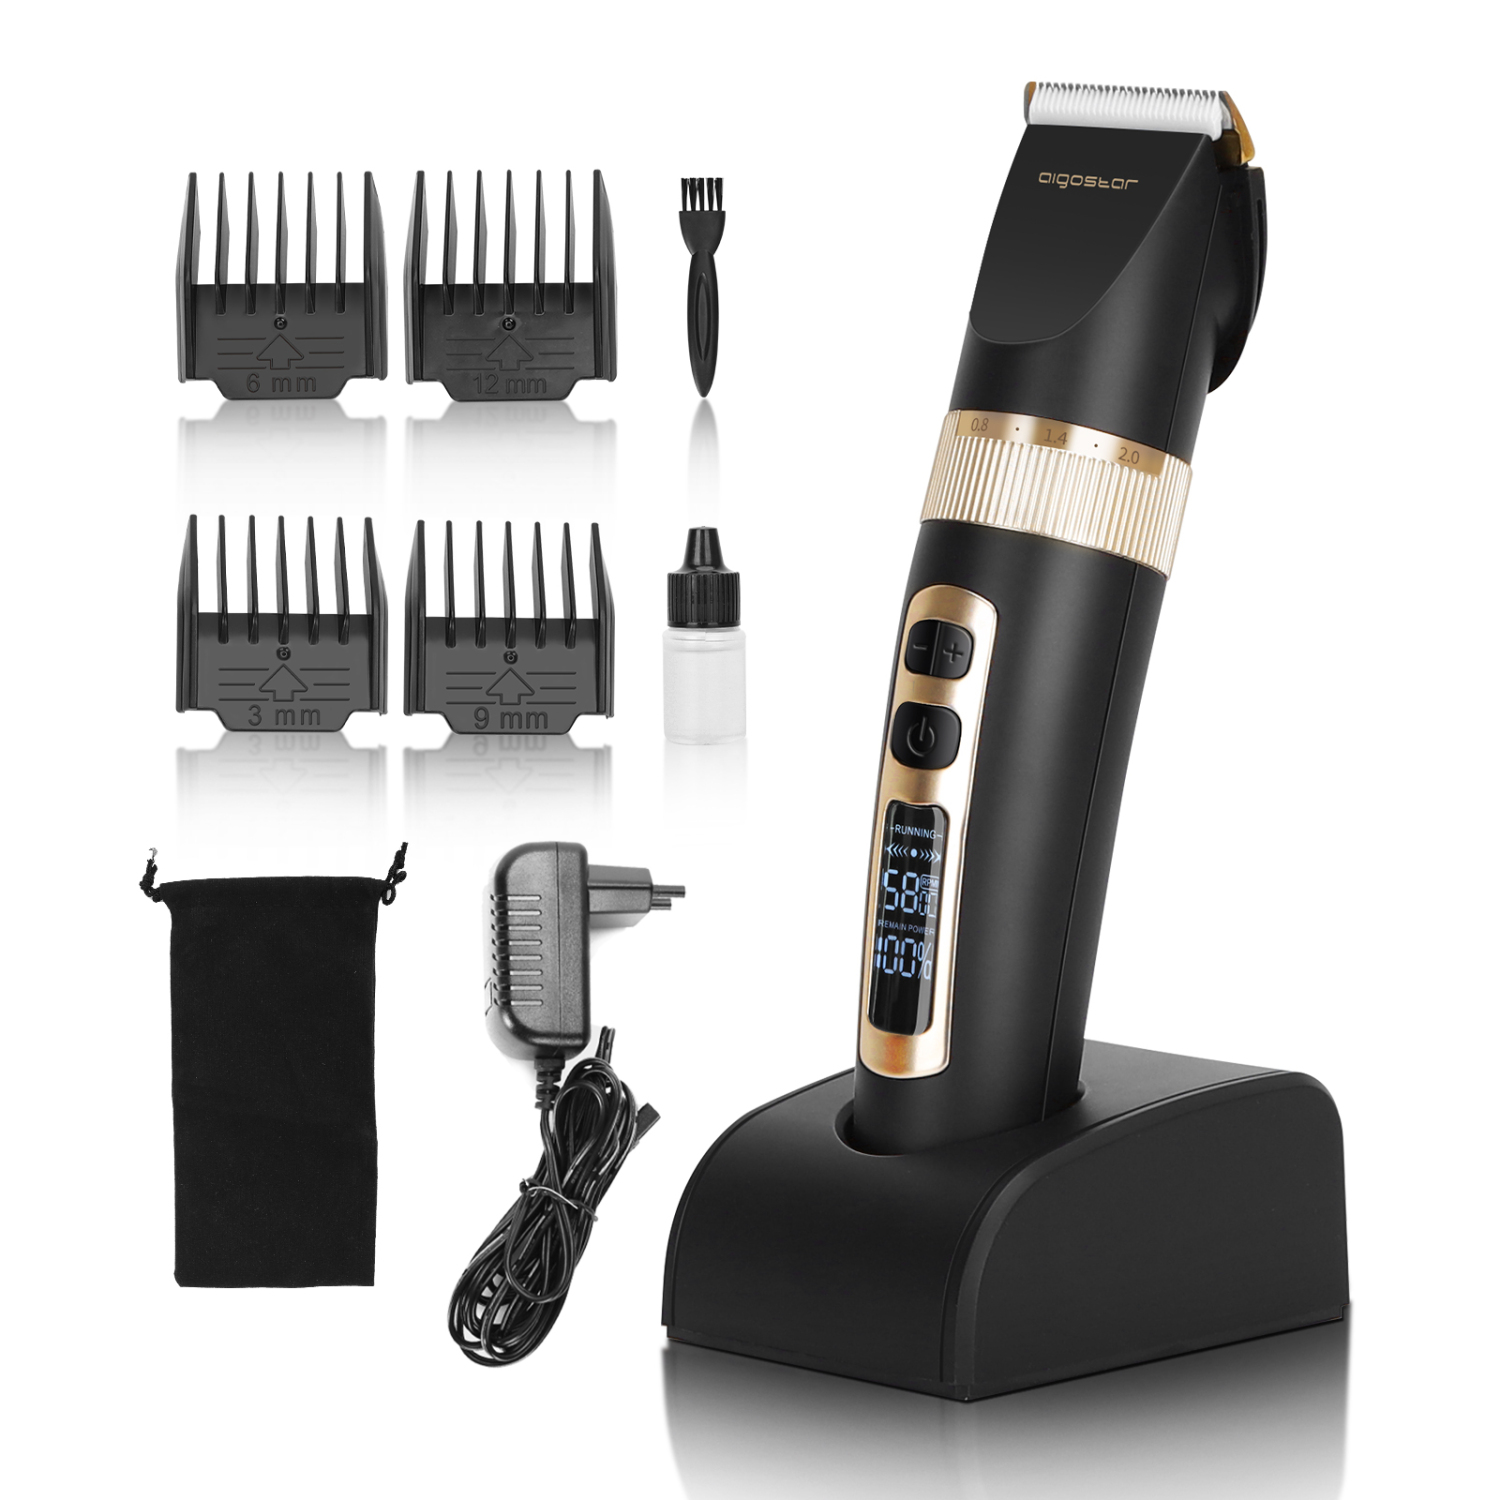 Aigostar Tendeuse Cheveux pour Hommes Professionel avec Écran LED Tondeuse Electriques pour Usage Domestique et Salon de Coiffure Avec 4 Peignes de Guidage